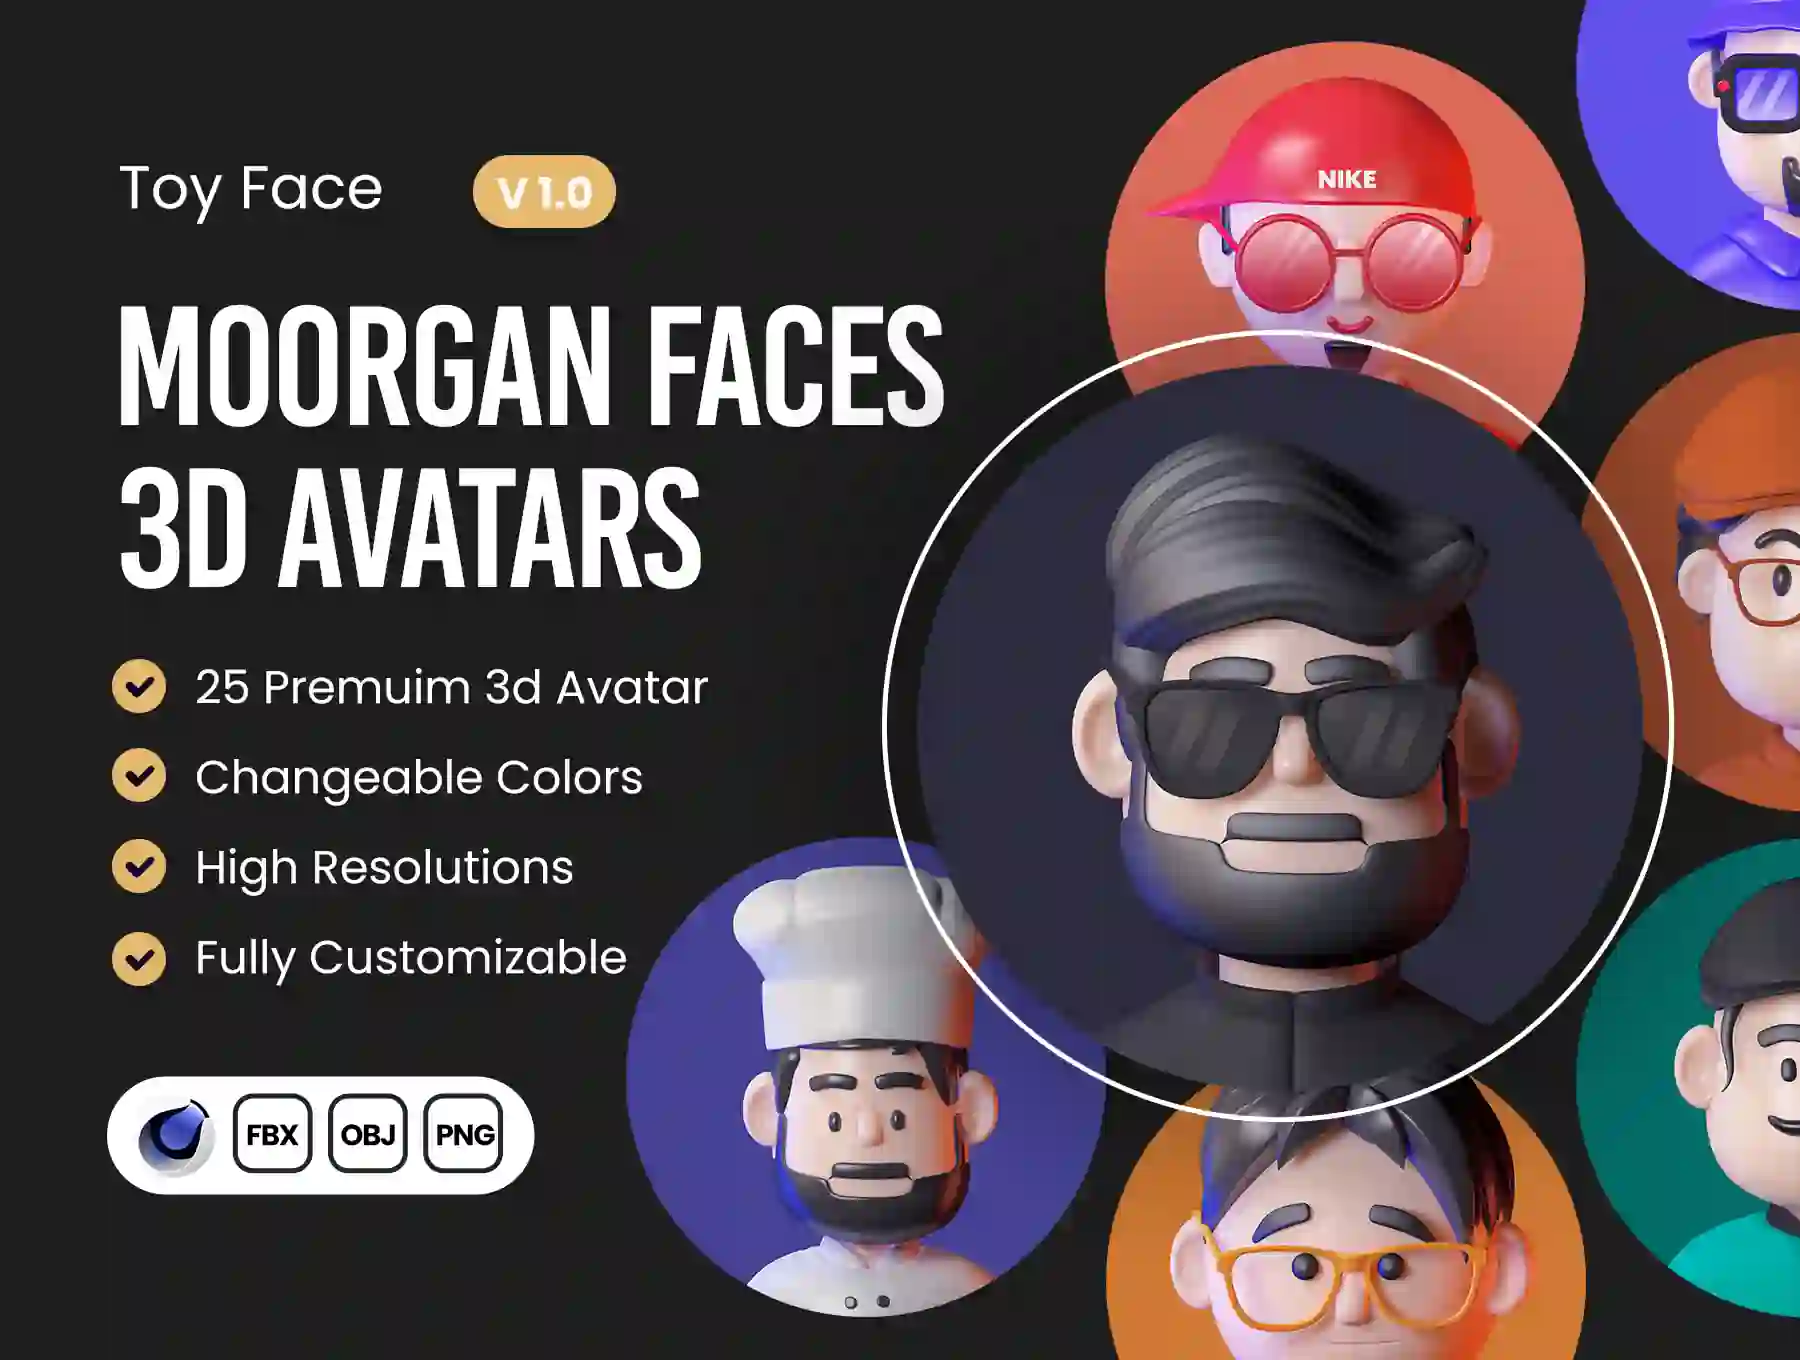 Moorgan 3D Avatar (v1.0)